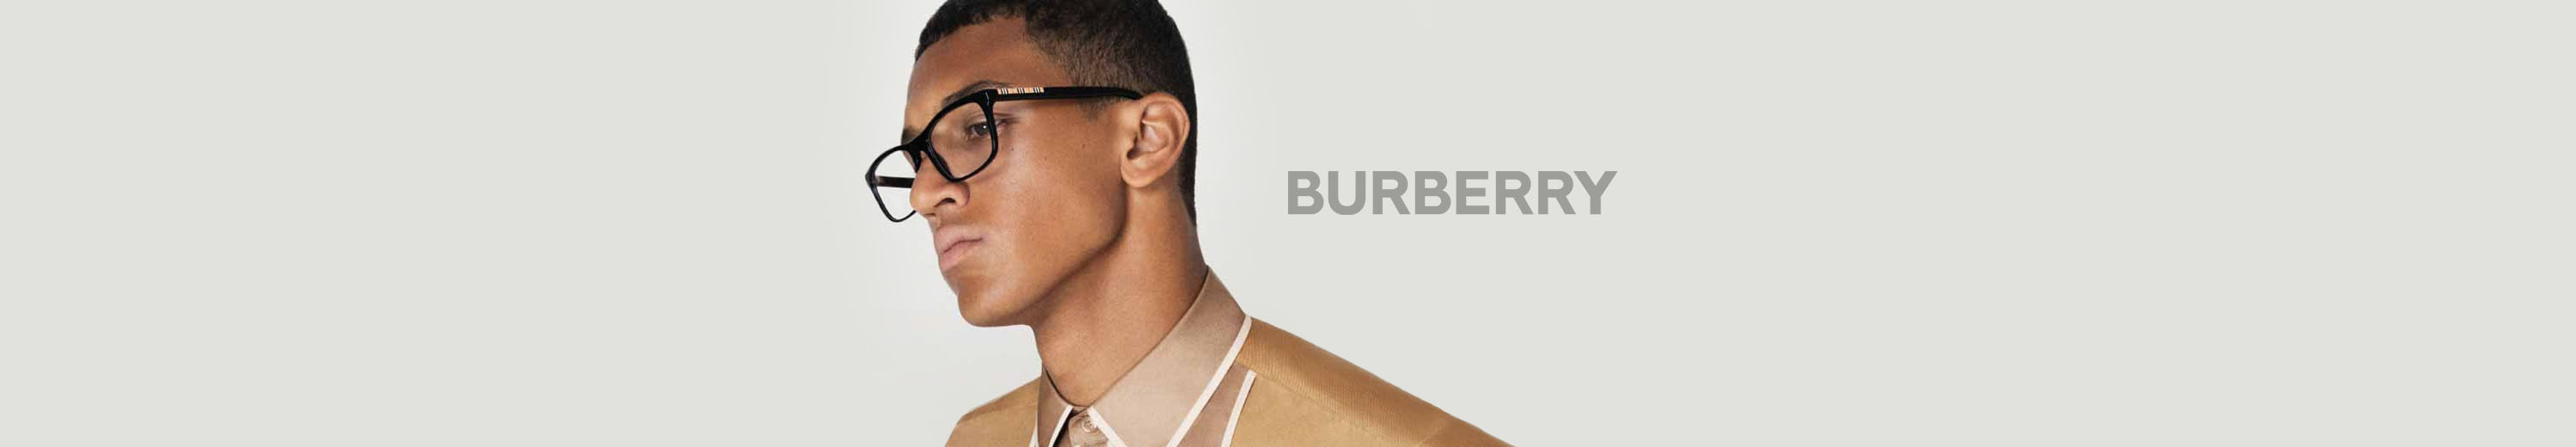 Burberry Eyeglasses for Men